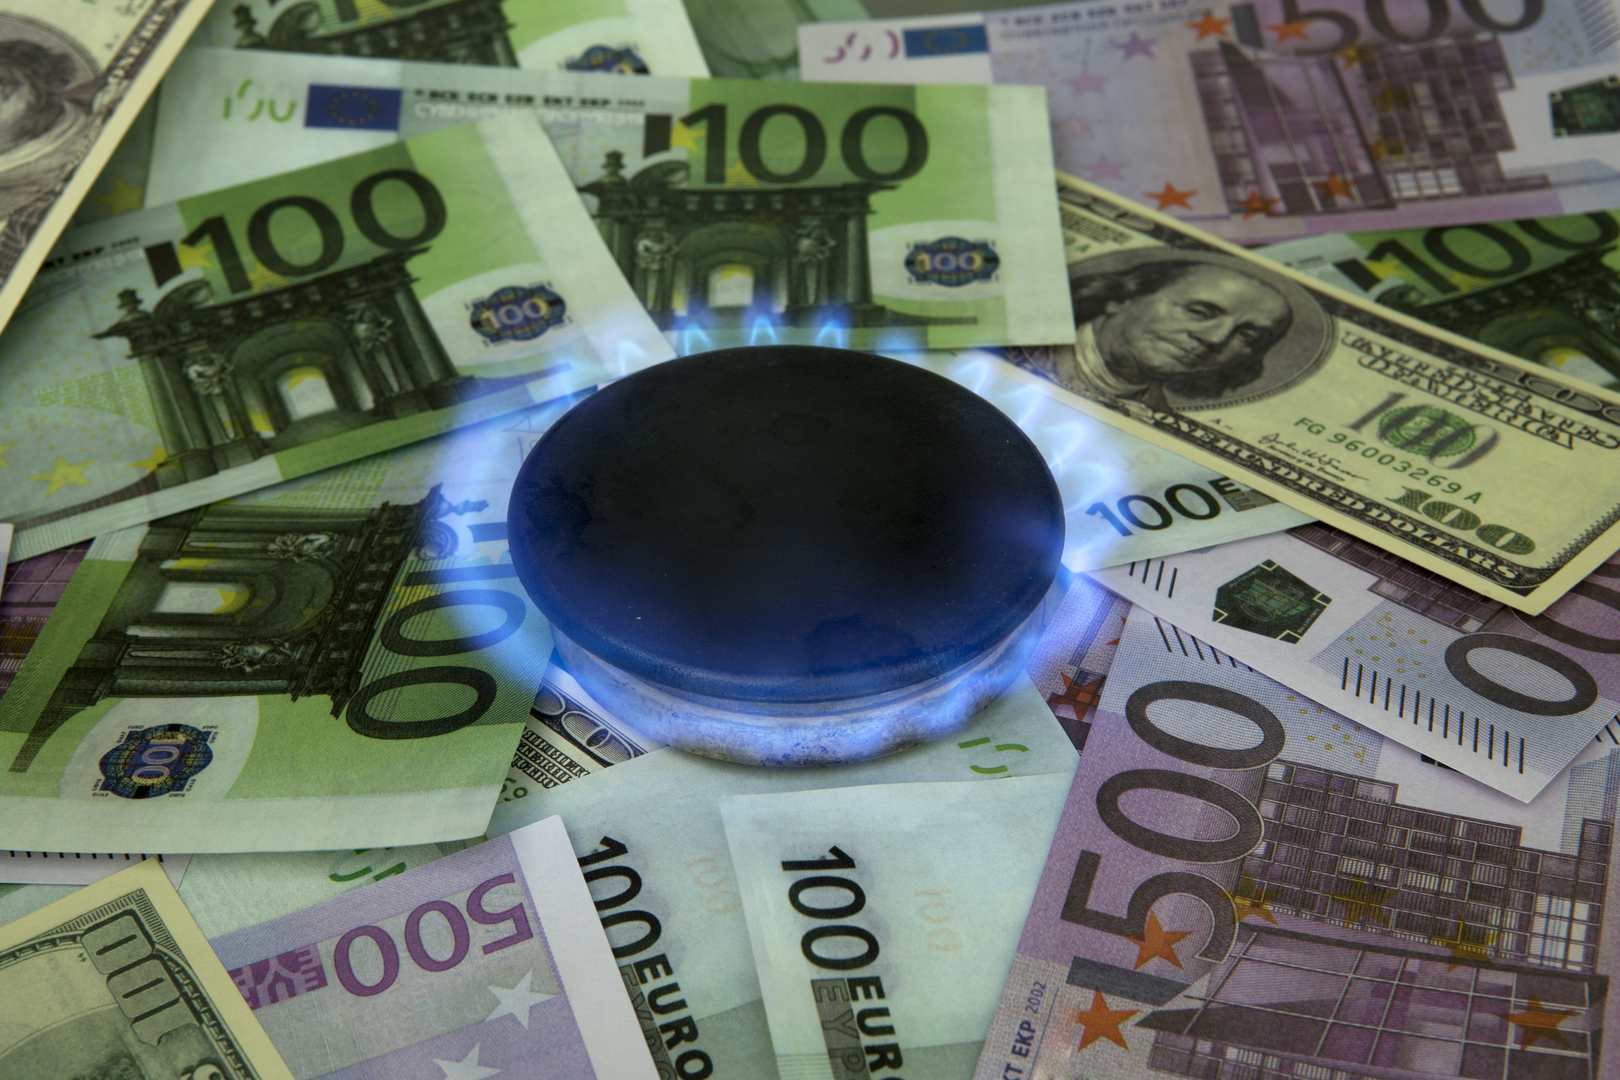 قفزة في أسعار الغاز في أوروبا